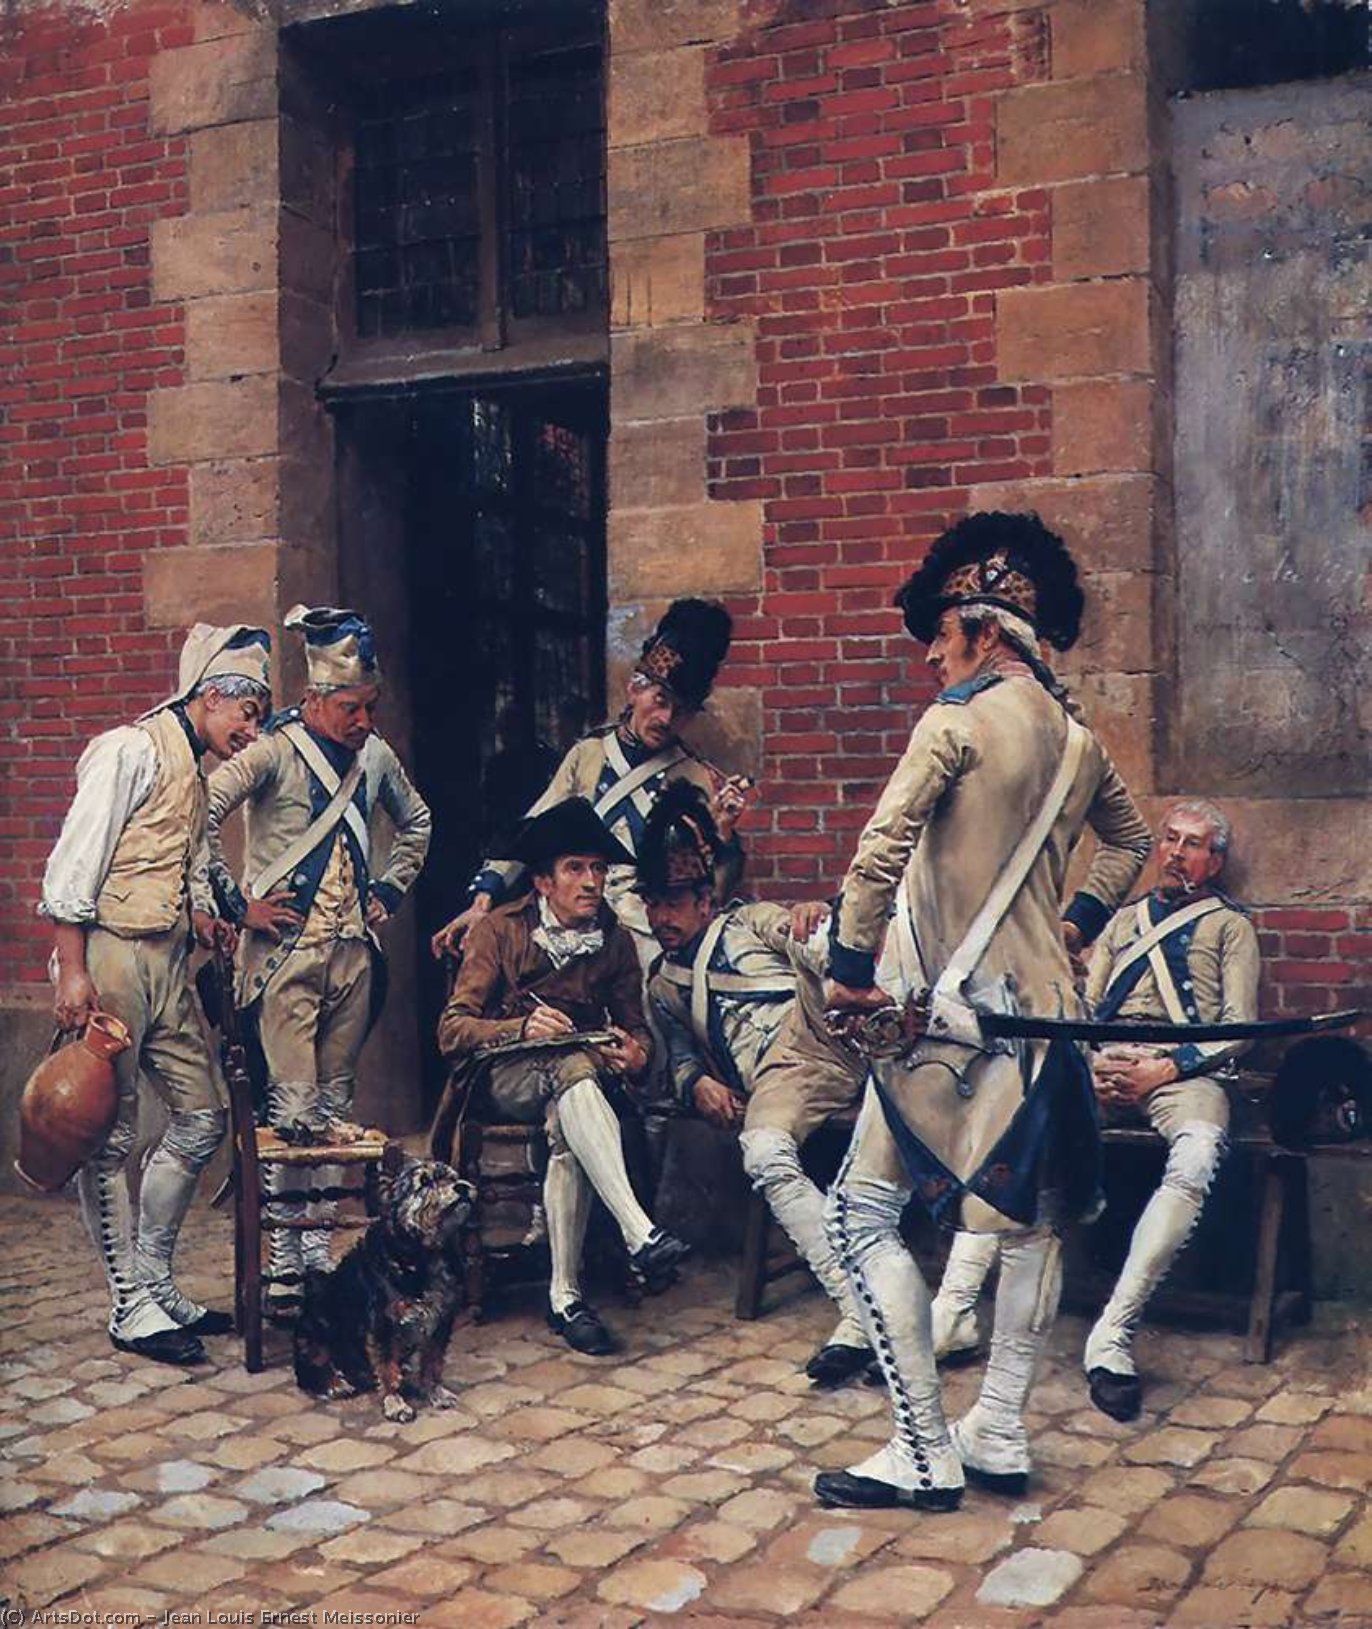 WikiOO.org - Encyclopedia of Fine Arts - Målning, konstverk Jean Louis Ernest Meissonier - The sergeants portrait